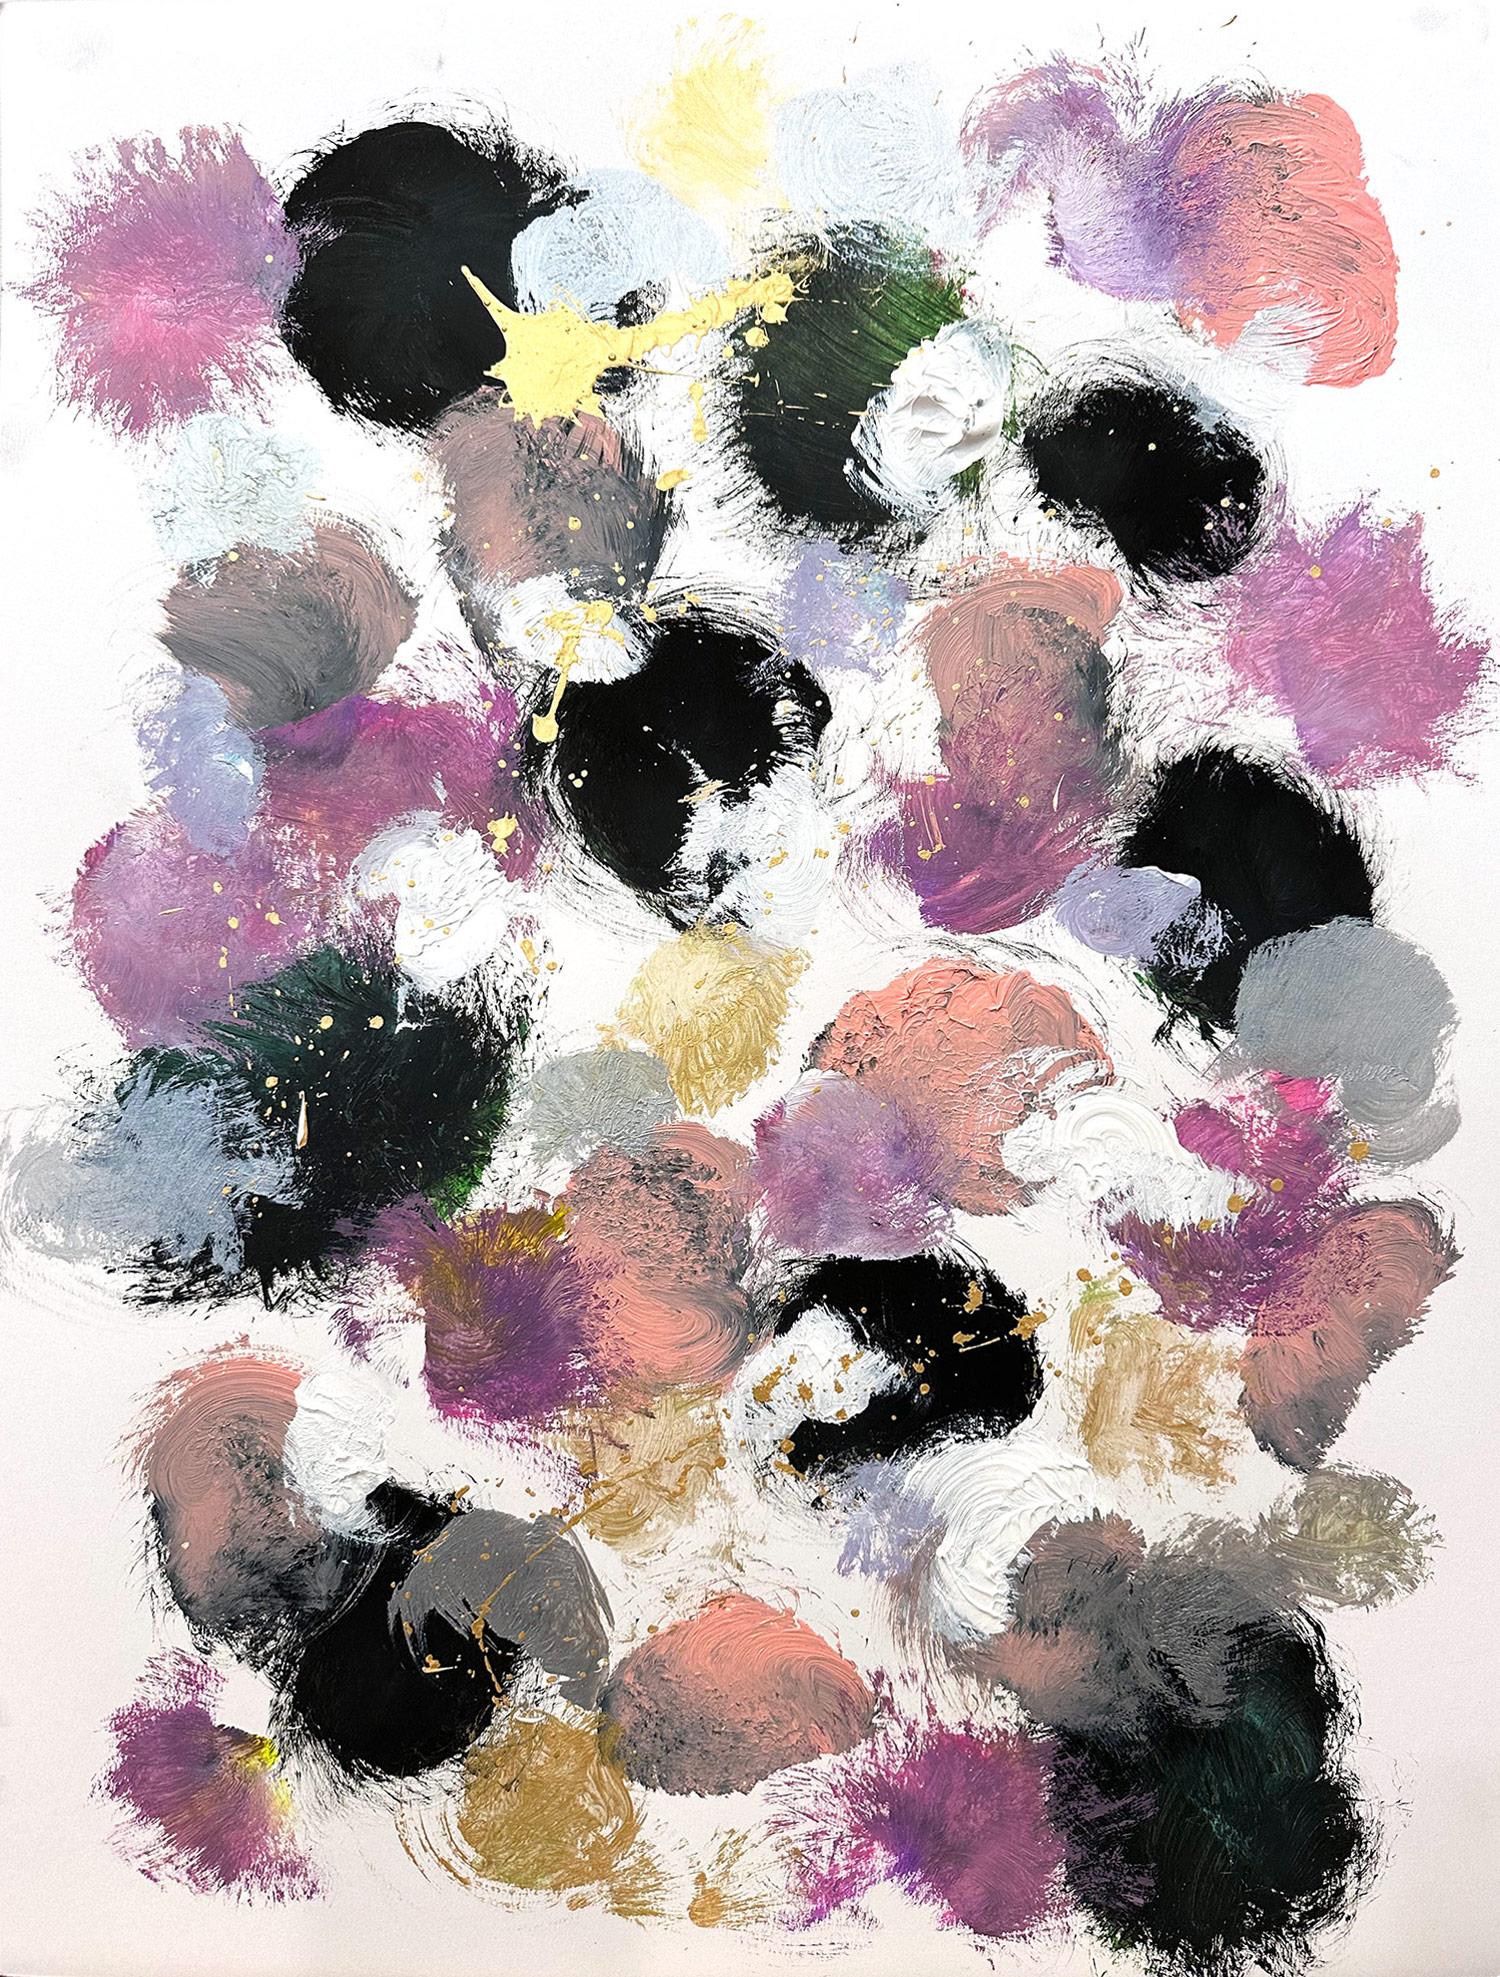 Abstract Painting Cindy Shaoul - "Kiss Me" Peinture contemporaine sur papier en théorie des couleurs inspirée par Sam Francis